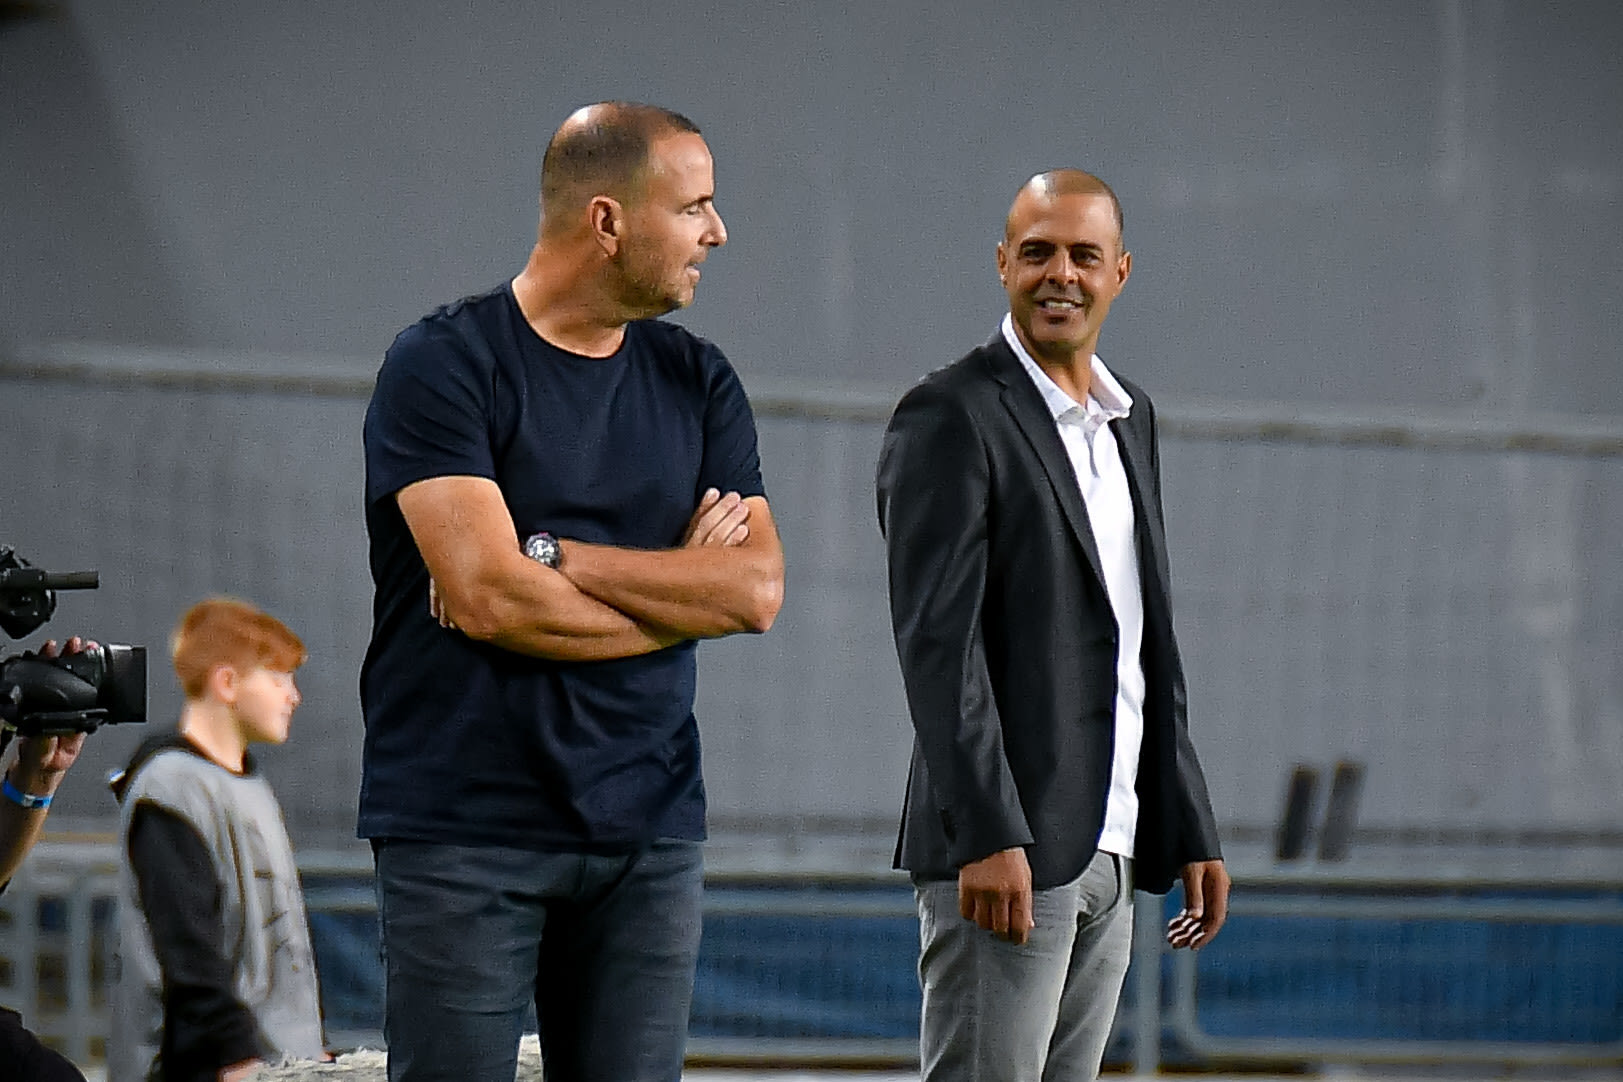 מאמן מכבי פתח תקוה גיא לוזון, ליד מאמן מ.ס. אשדוד רן בן שמעון